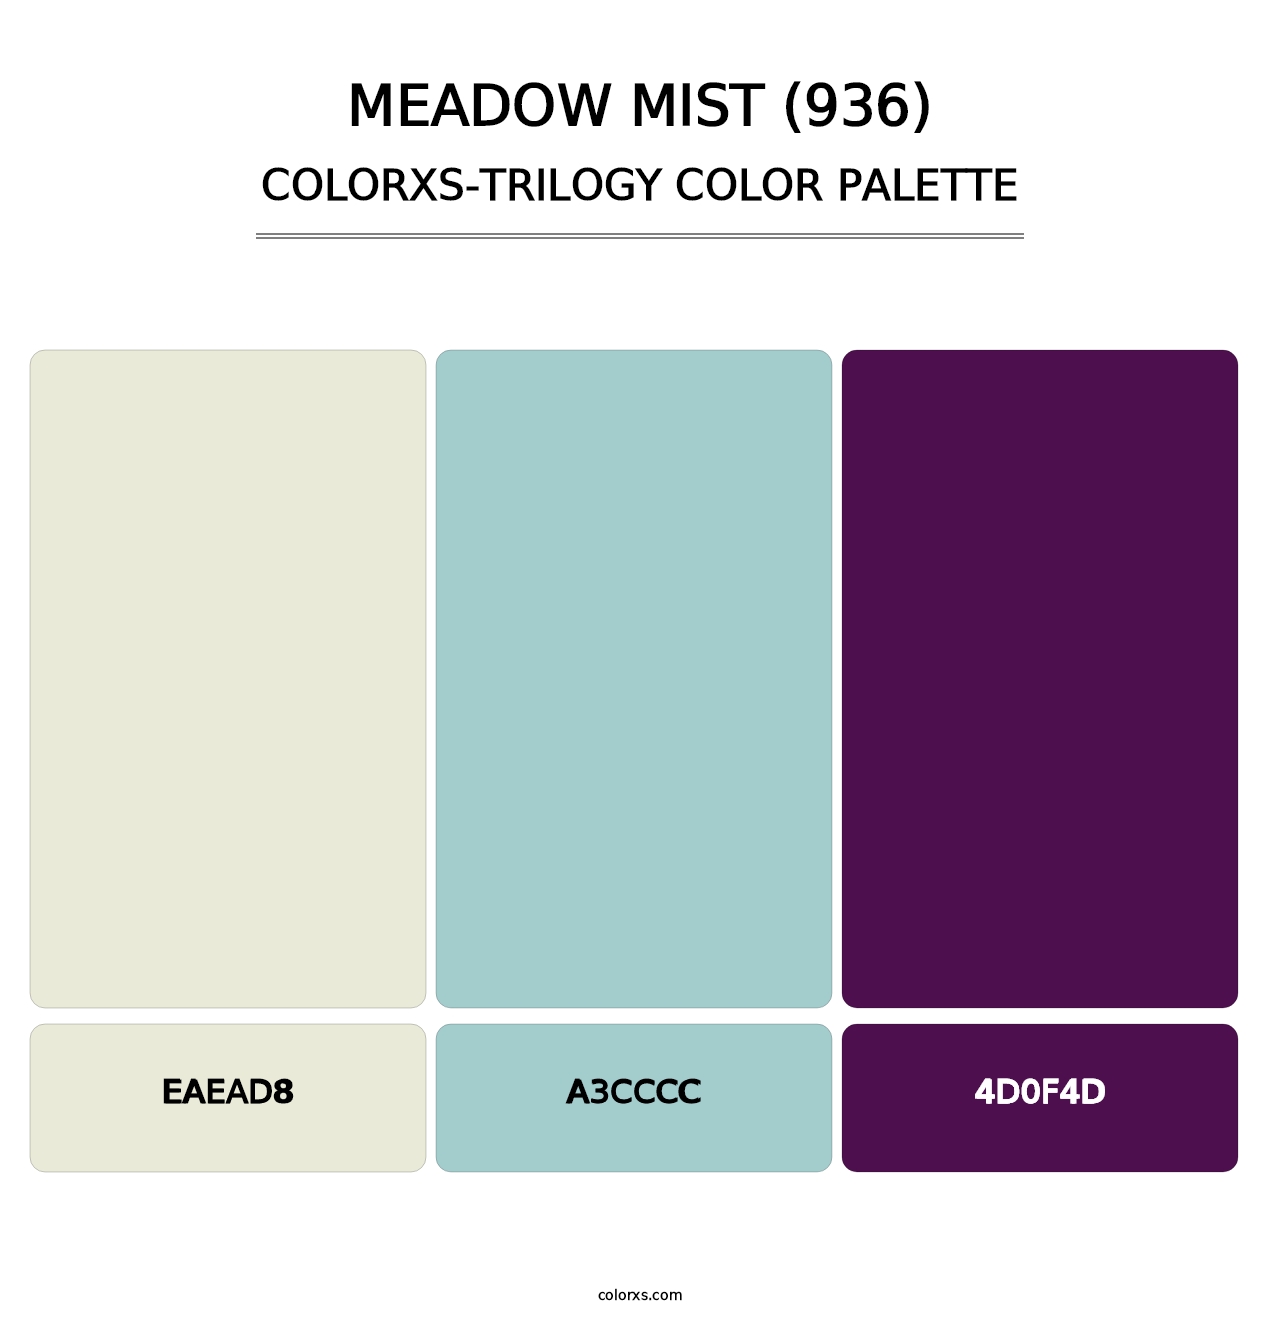 Meadow Mist (936) - Colorxs Trilogy Palette